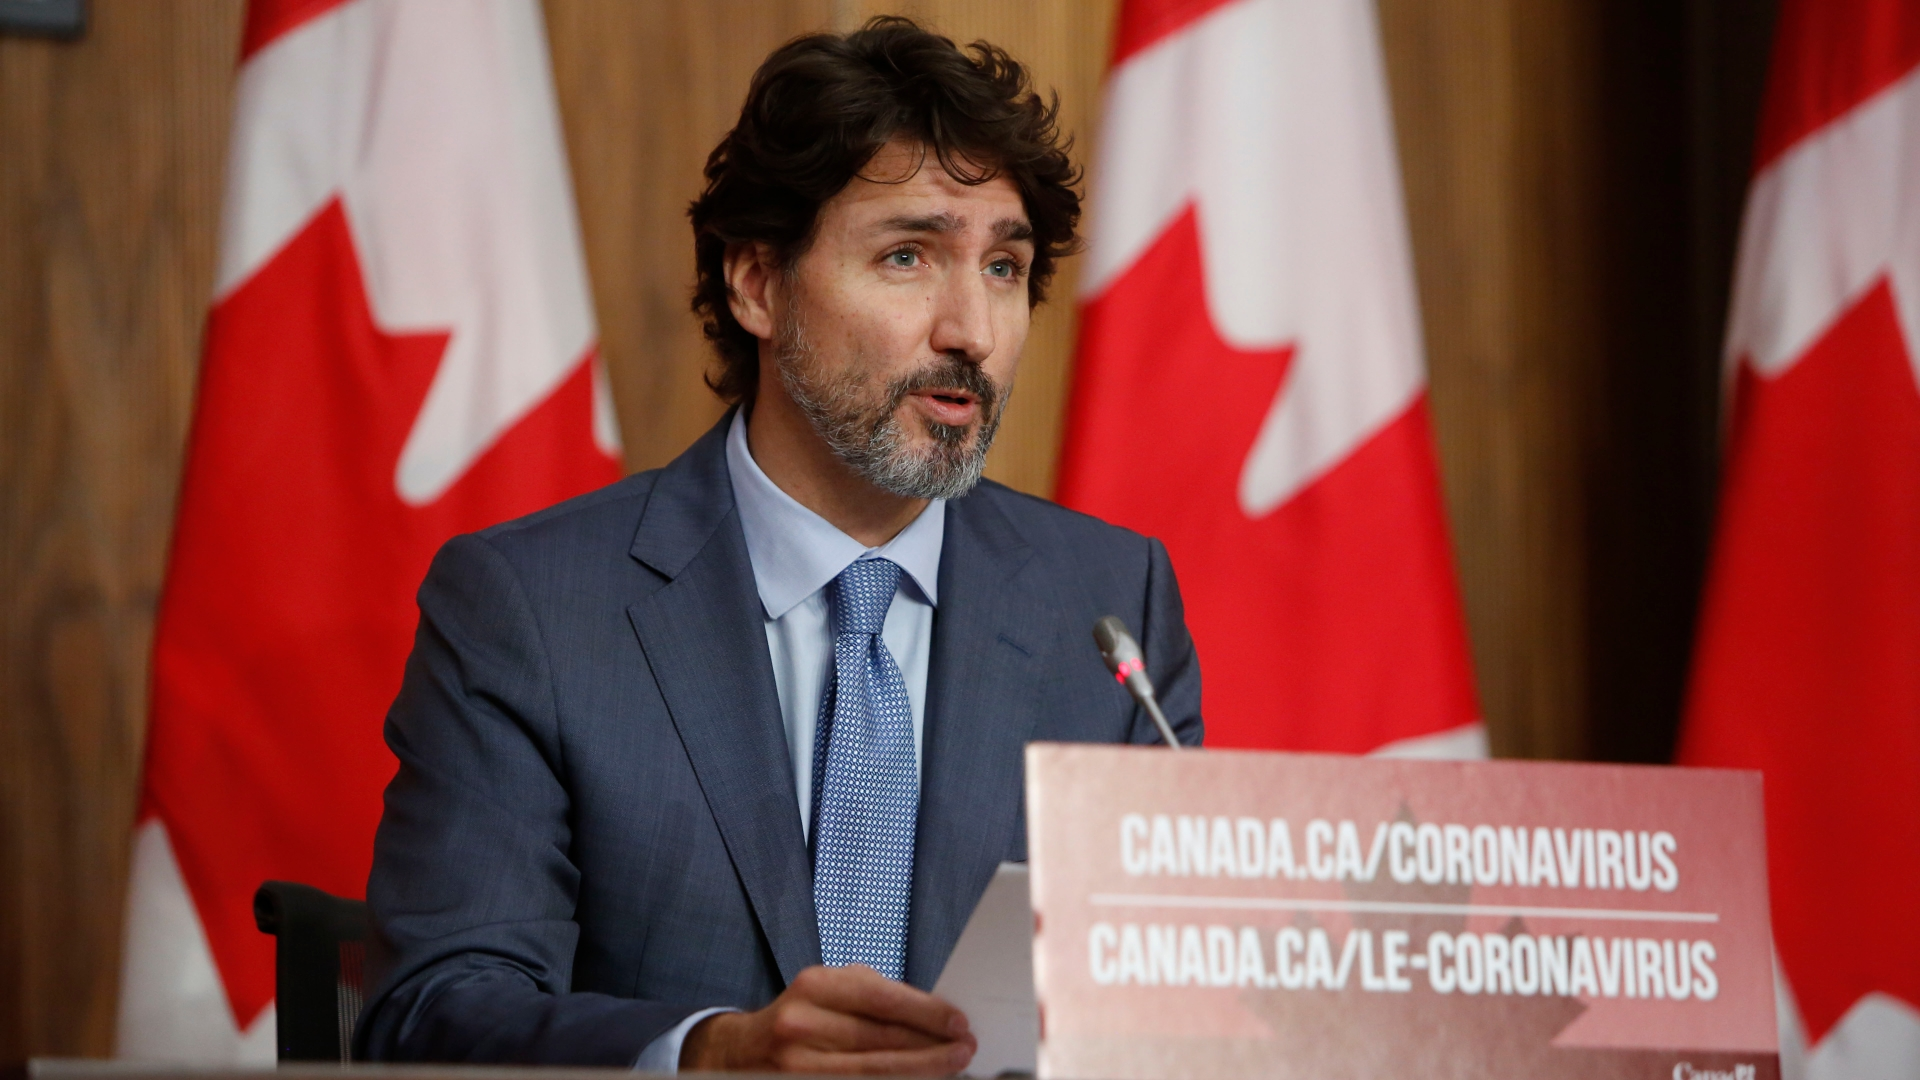 Глава уряду Канади Джастін Трюдо теж не задоволений темпами щеплень (Фото: Reuters)